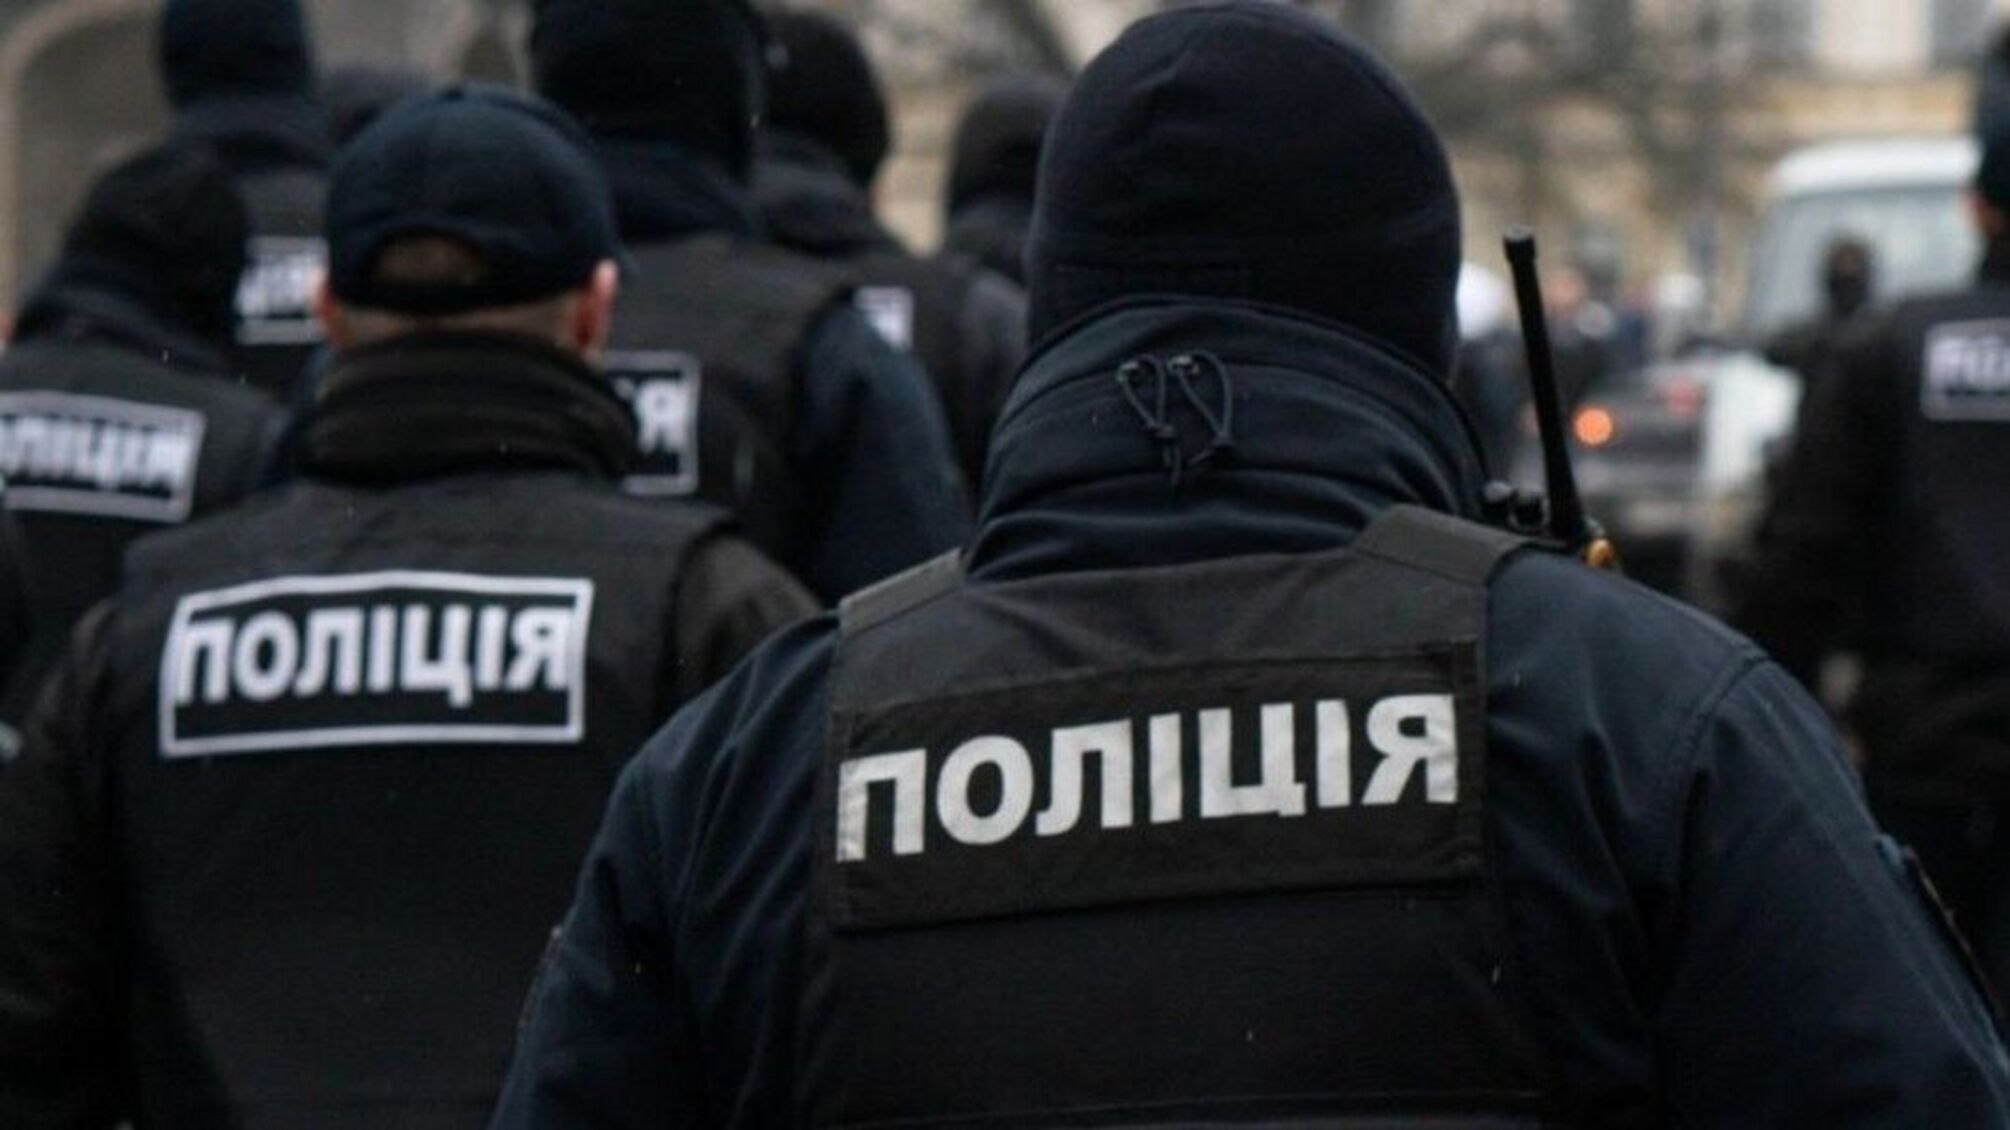 Незаконно завладел квартирой стоимостью 3 млн грн: полиция Киева разоблачила мошенника